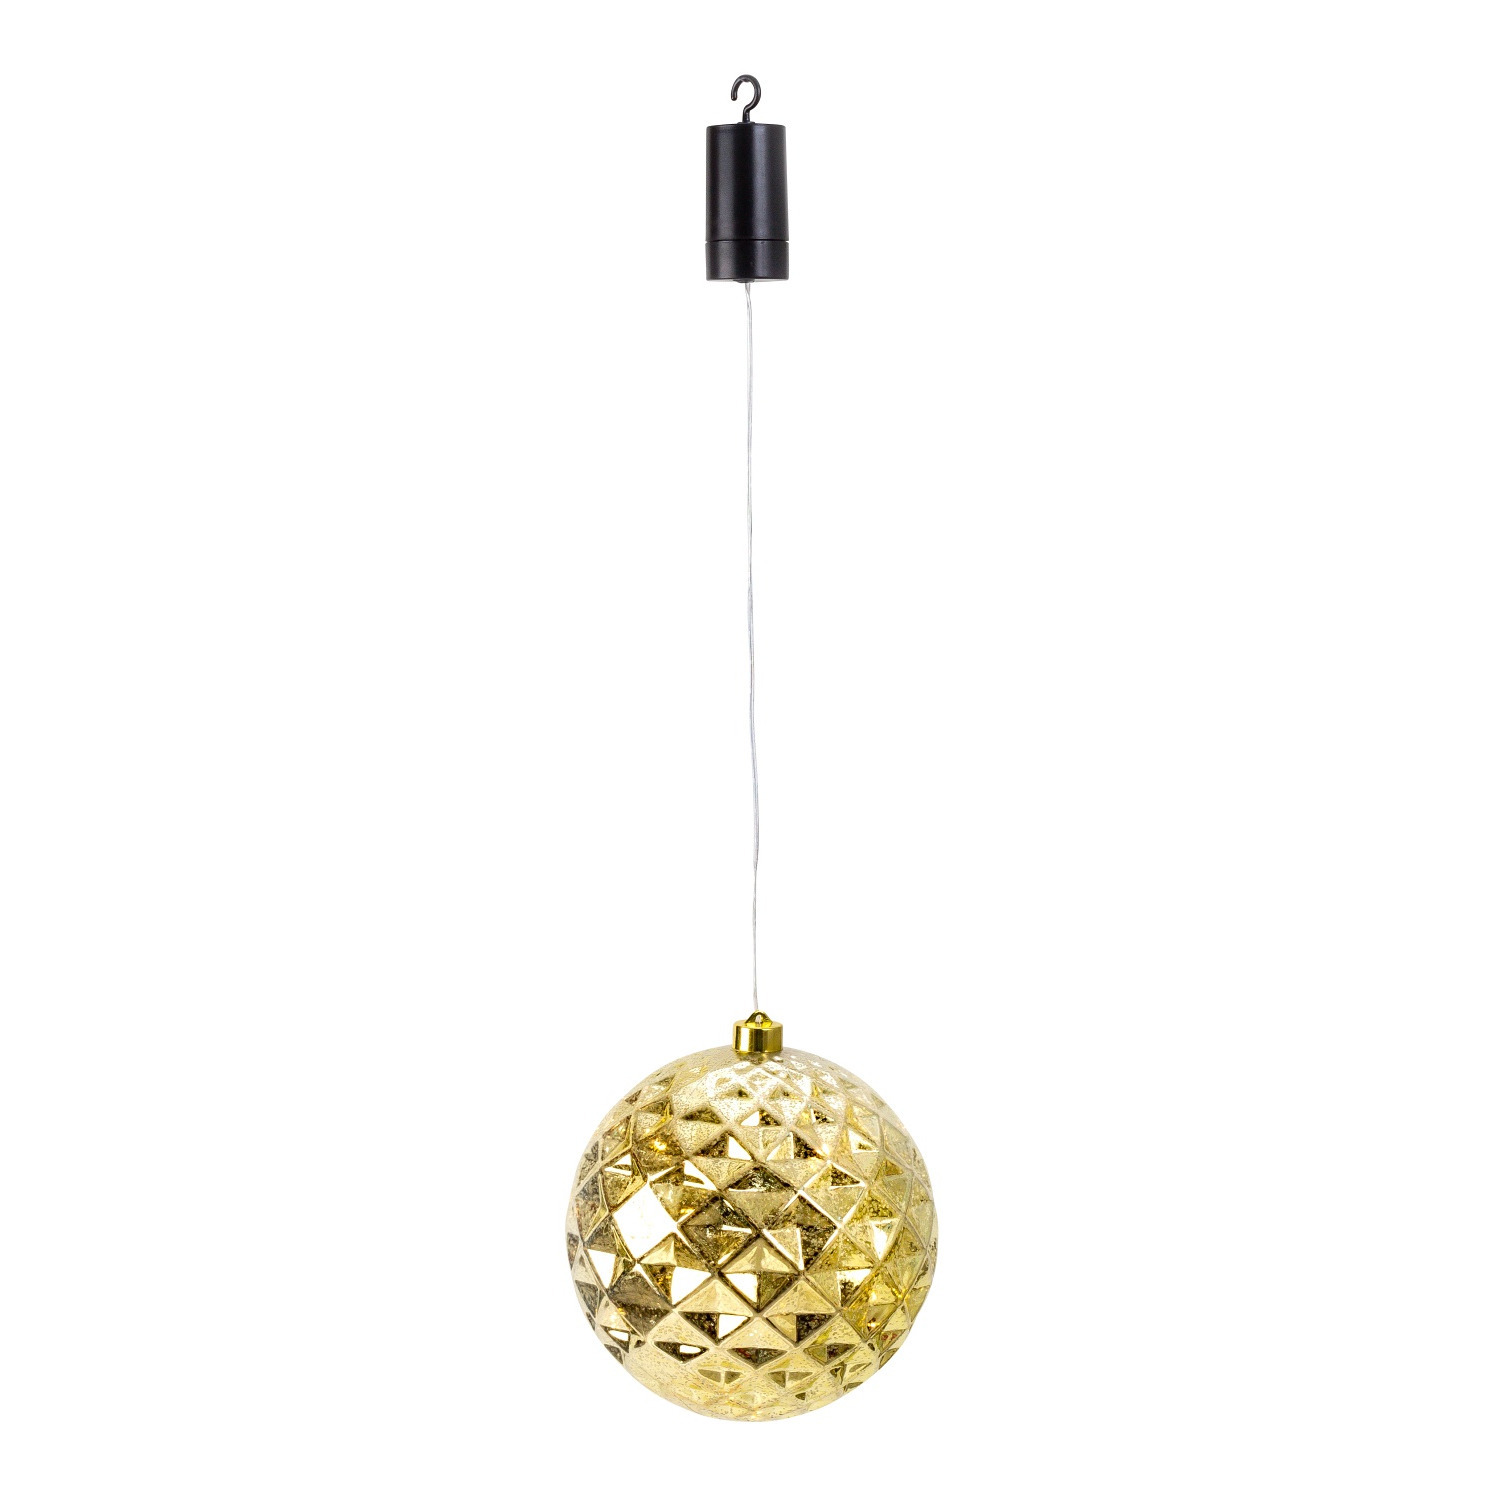 IKO kerstbal goud met led verlichting- D20 cm aan draad